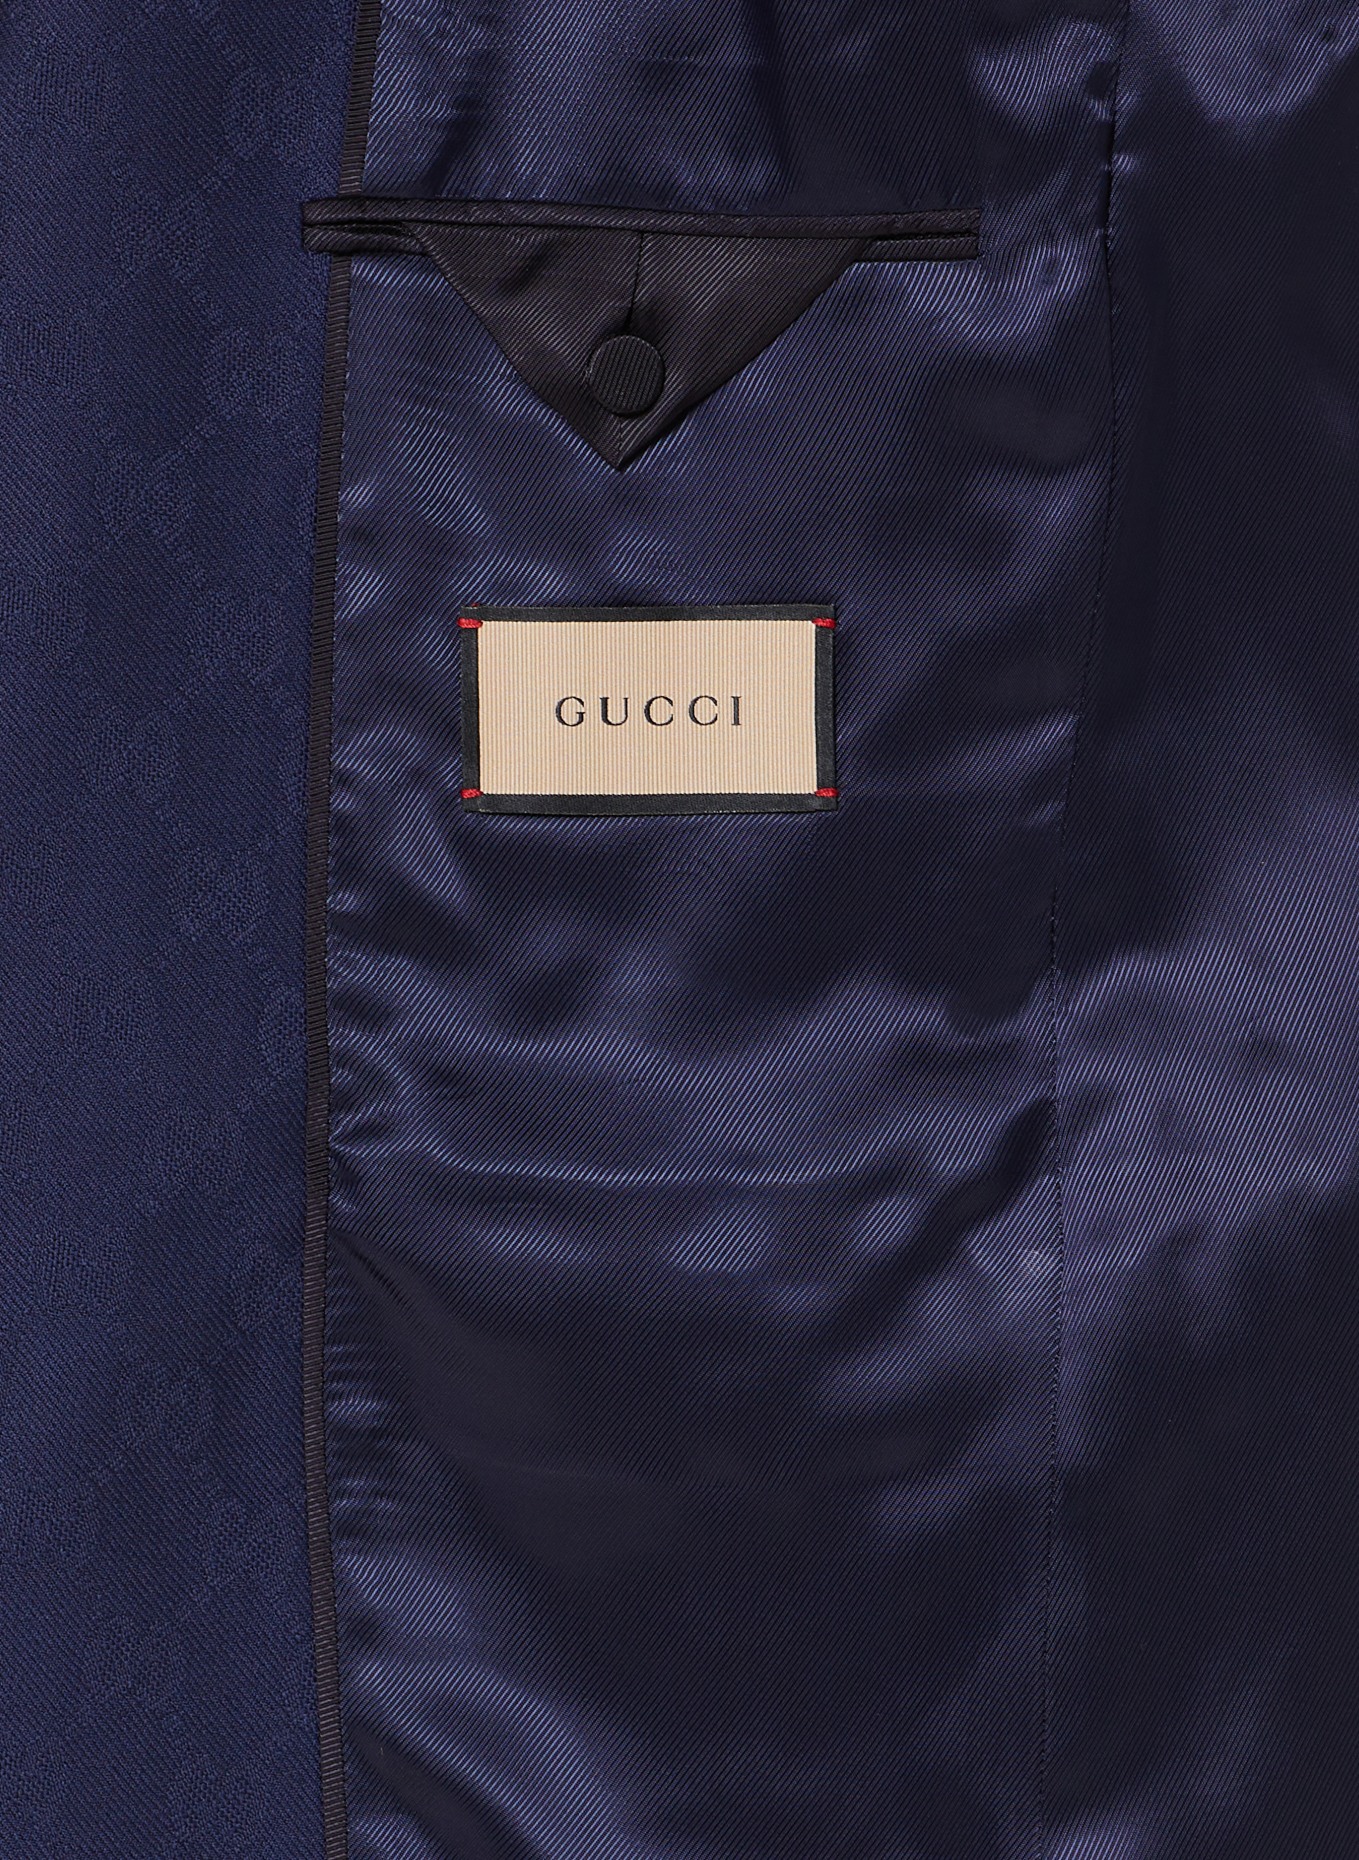 GUCCI Suit Extra slim fit, Color: 4240 Caspian (Image 7)